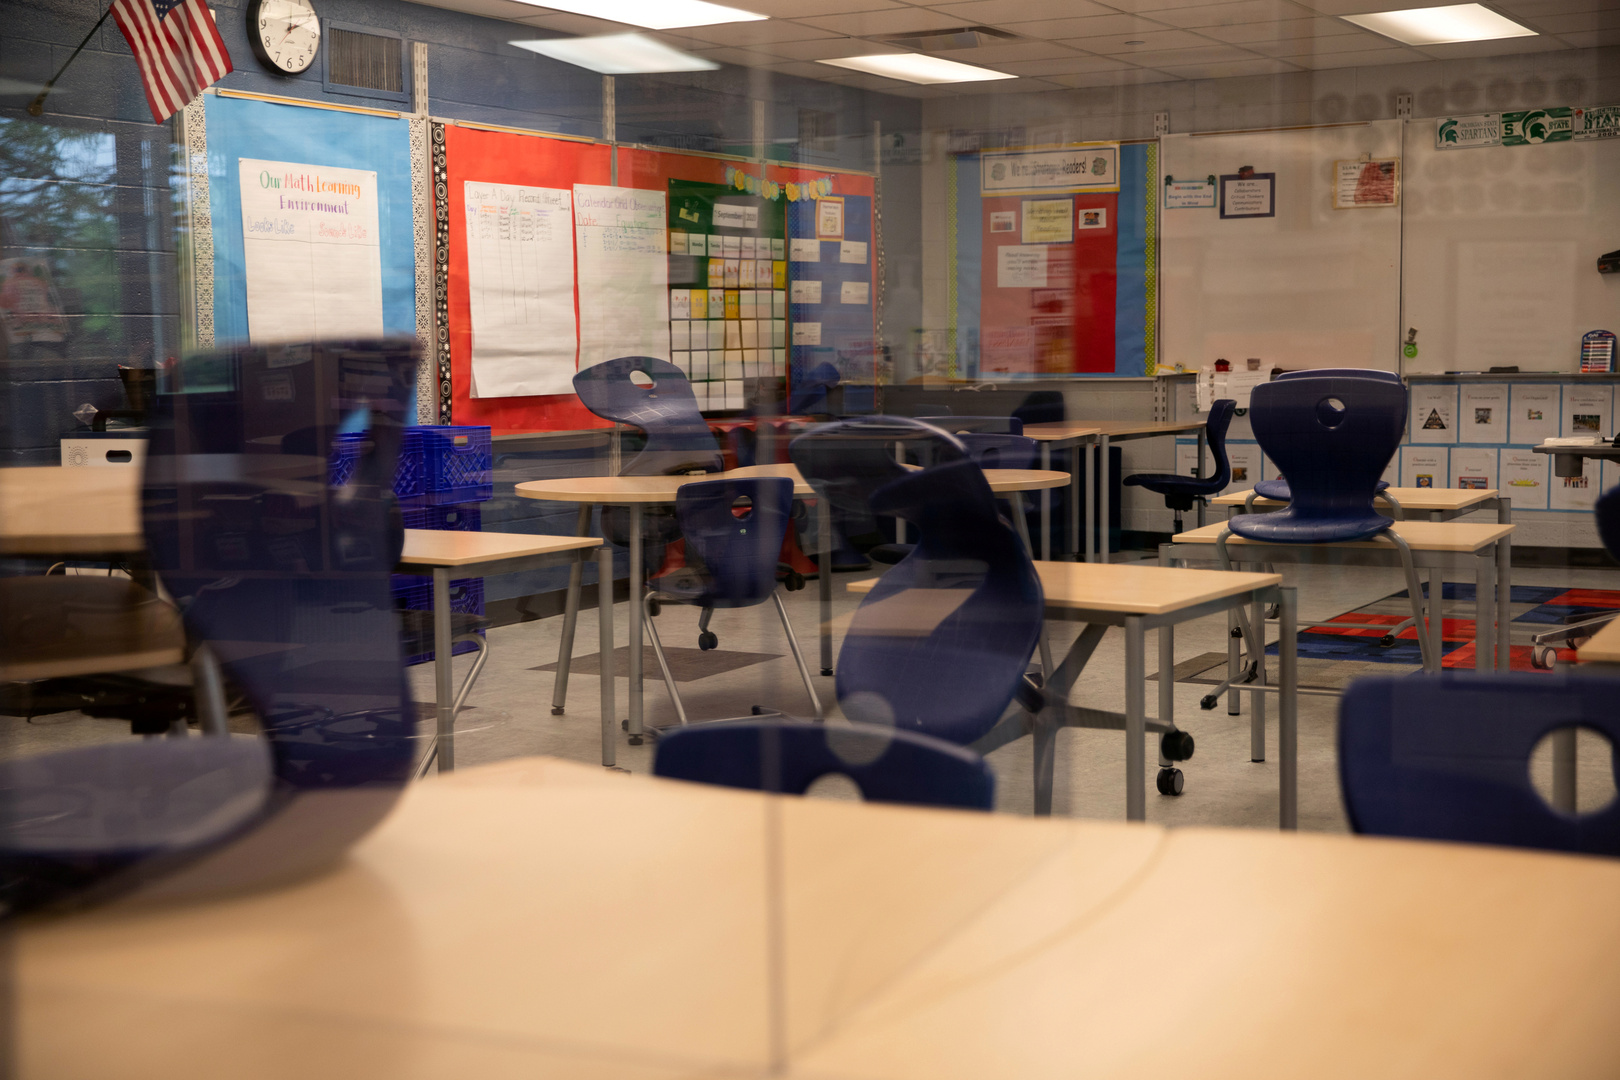 تلميذ يفجر قنبلة يدوية الصنع في أحد المدارس بولاية ميشيغان الأمريكية